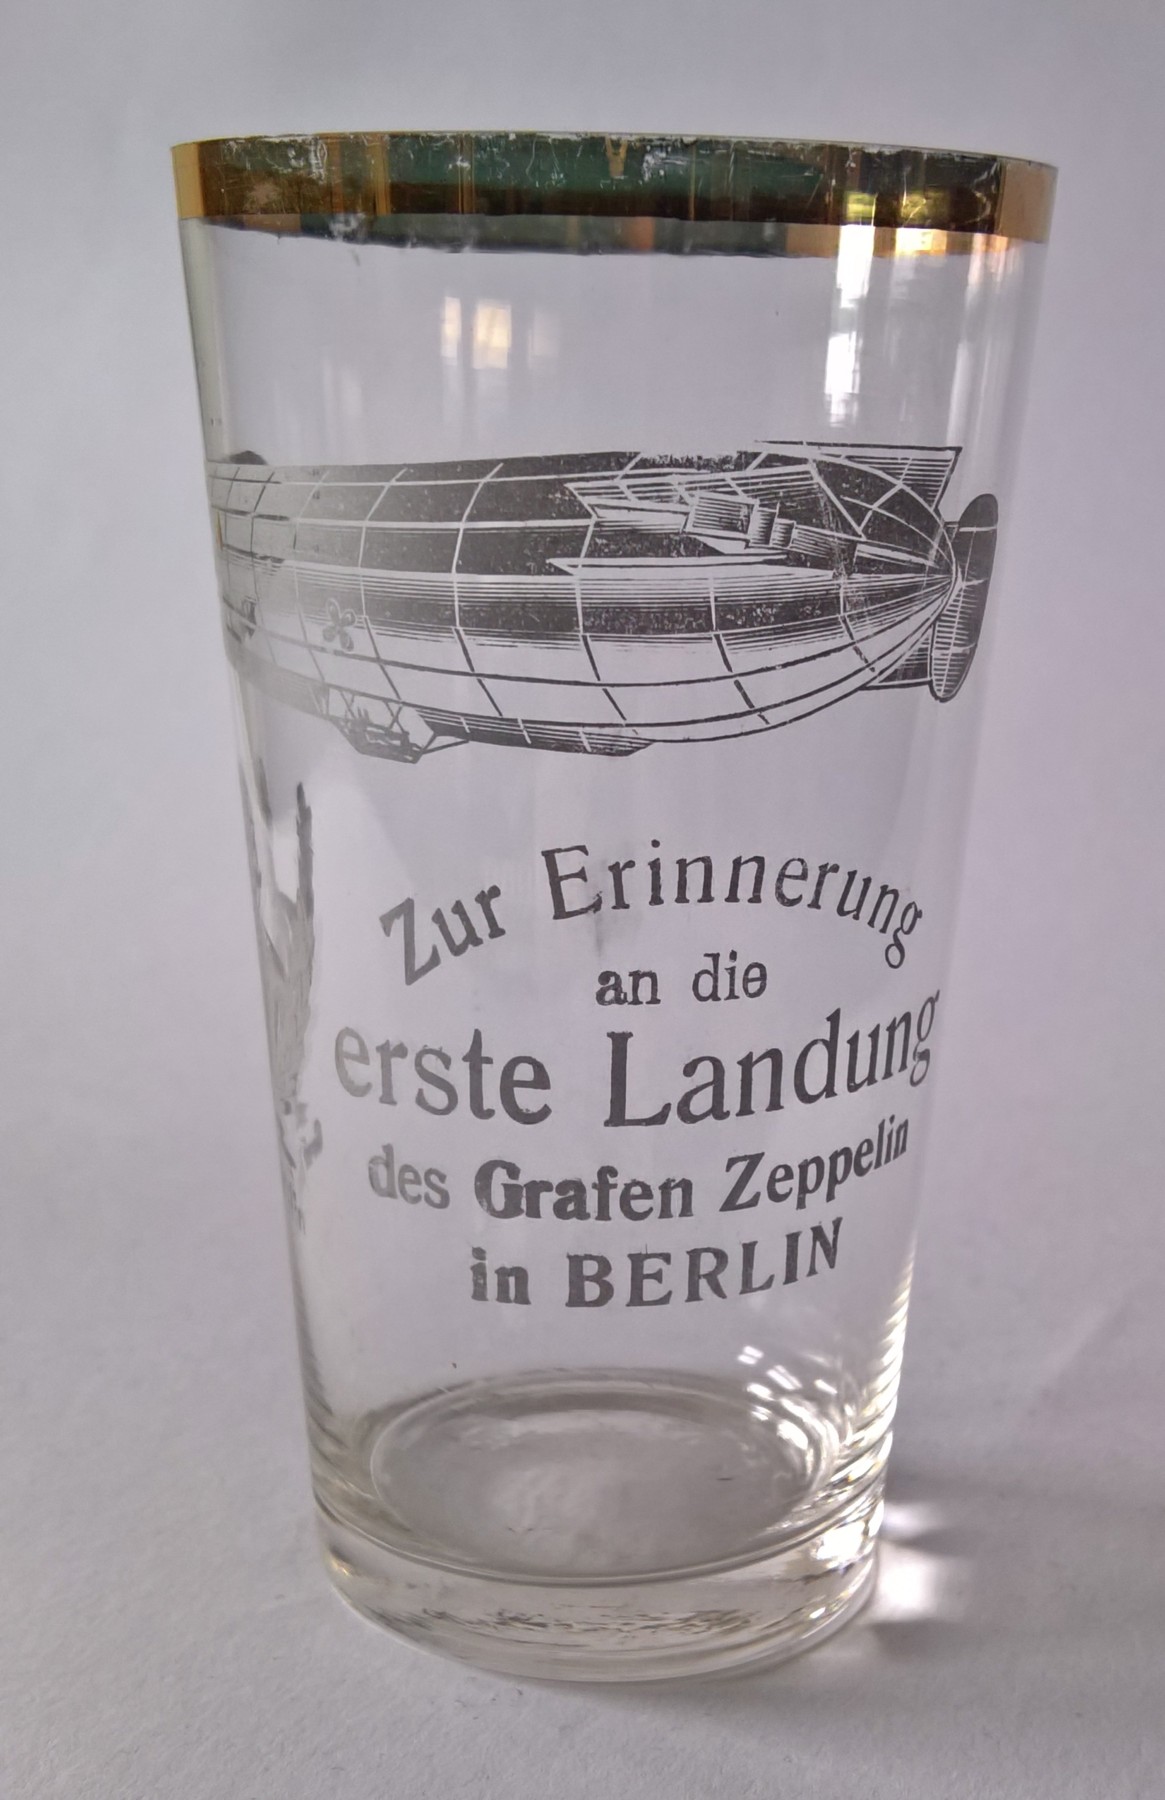 Zur Erinnerung an die erste Landung des Grafen Zeppelin in Berlin (M.-A. Trappe CC BY-NC-SA)